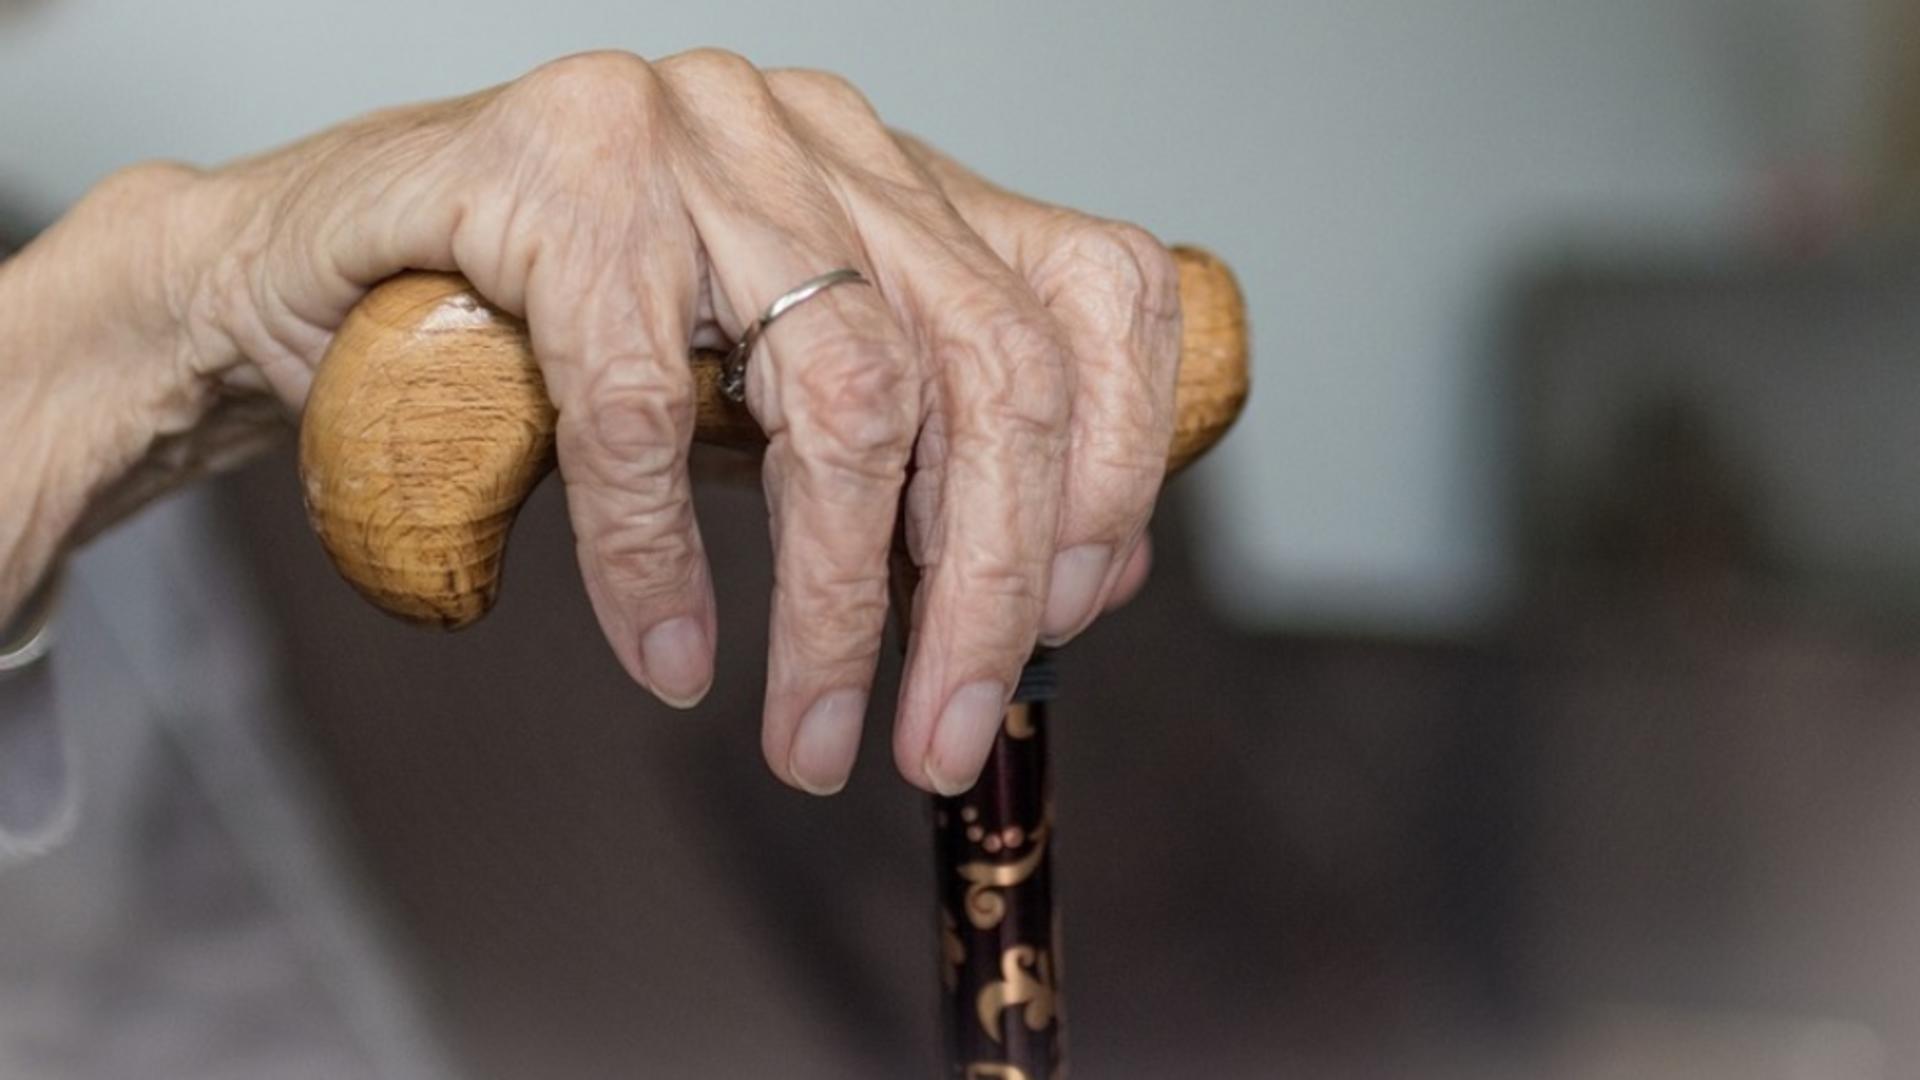 Bătrâna jignită la spitalul din Craiova a murit. Fusese obligată să se dea jos de pe targă, deși avea piciorul amputat